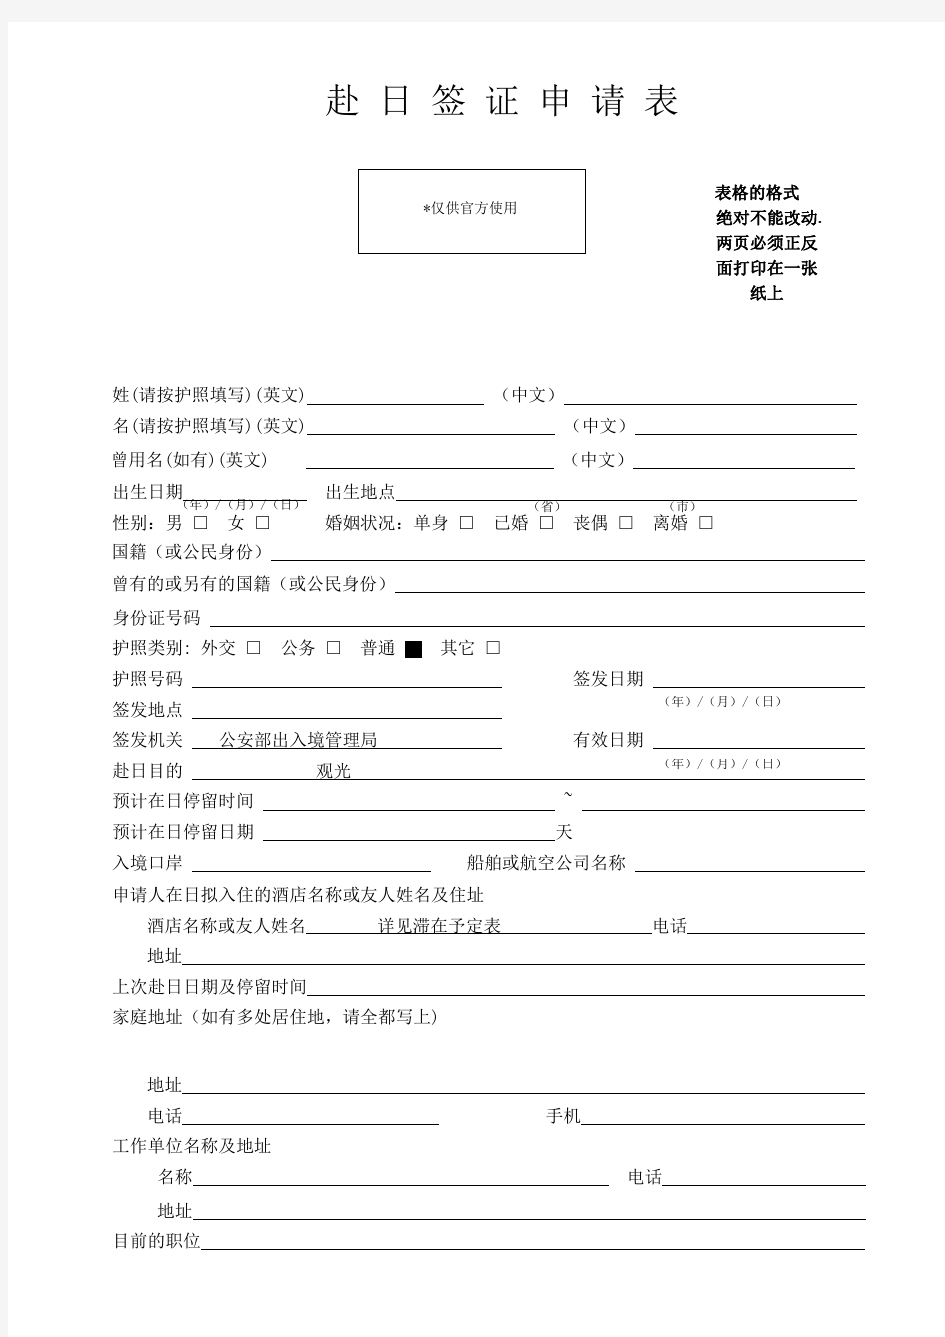 赴日签证申请表(表格内容必须手写、正反面打印)